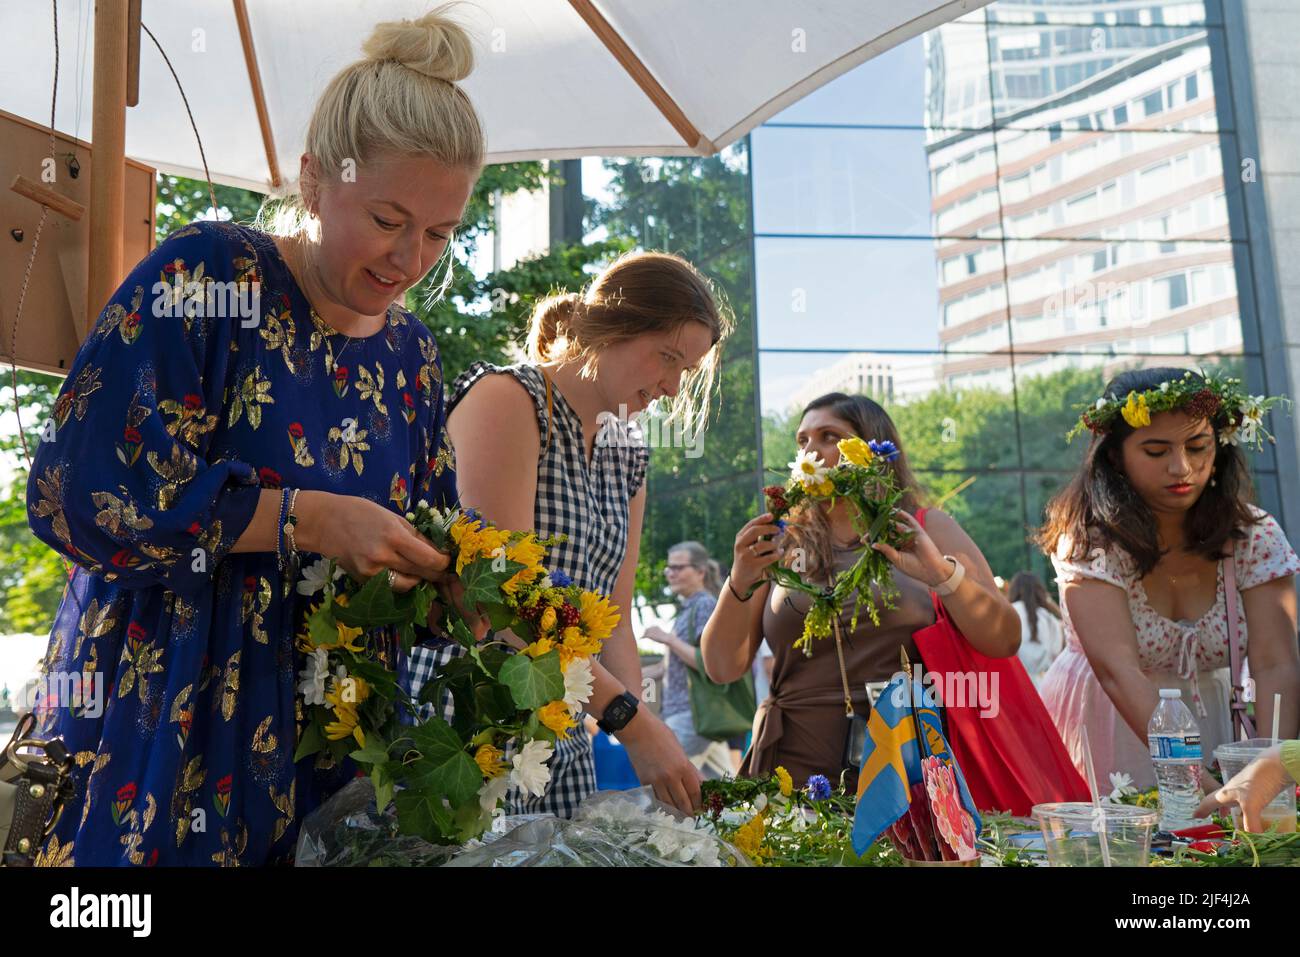 Kranzherstellung beim Schwedischen Mittsommerfest, das in Battery Park City, Manhattan, zur Feier des St. John's Day und der Sommersonnenwende stattfindet. Stockfoto